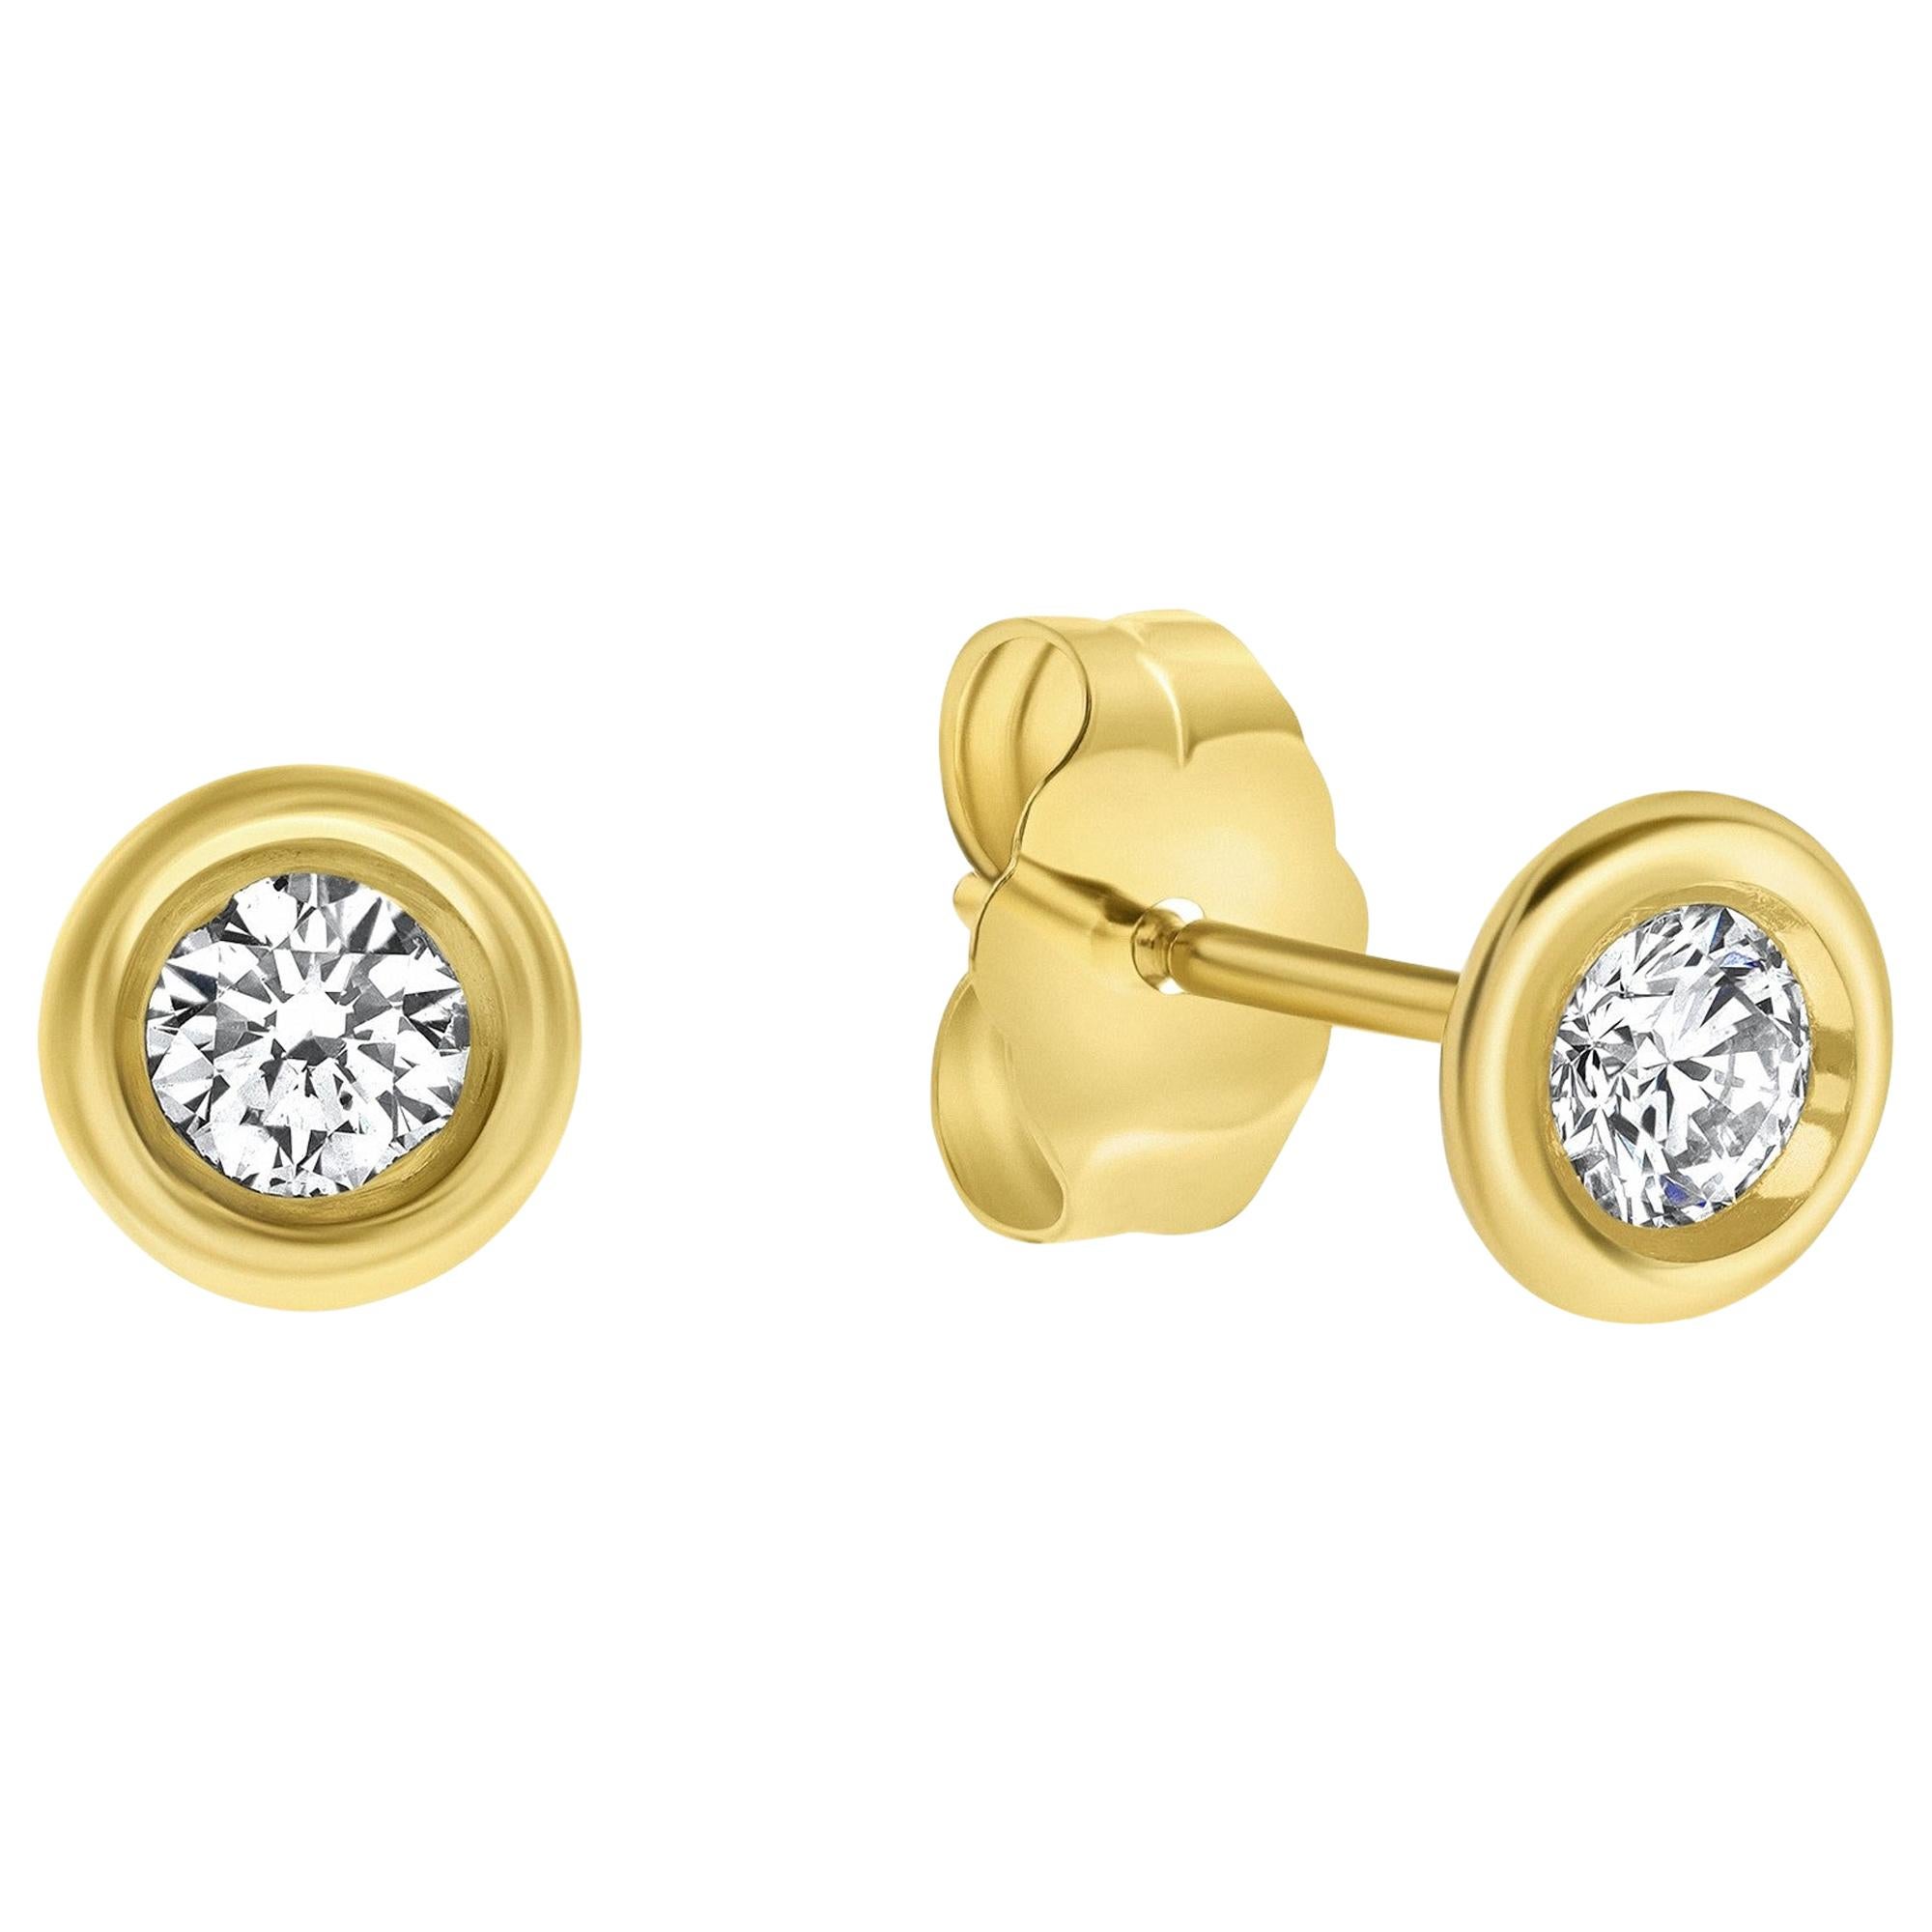 0.22 Carat Diamond Bezel Set Stud Earrings in 14K Yellow Gold, Shlomit Rogel